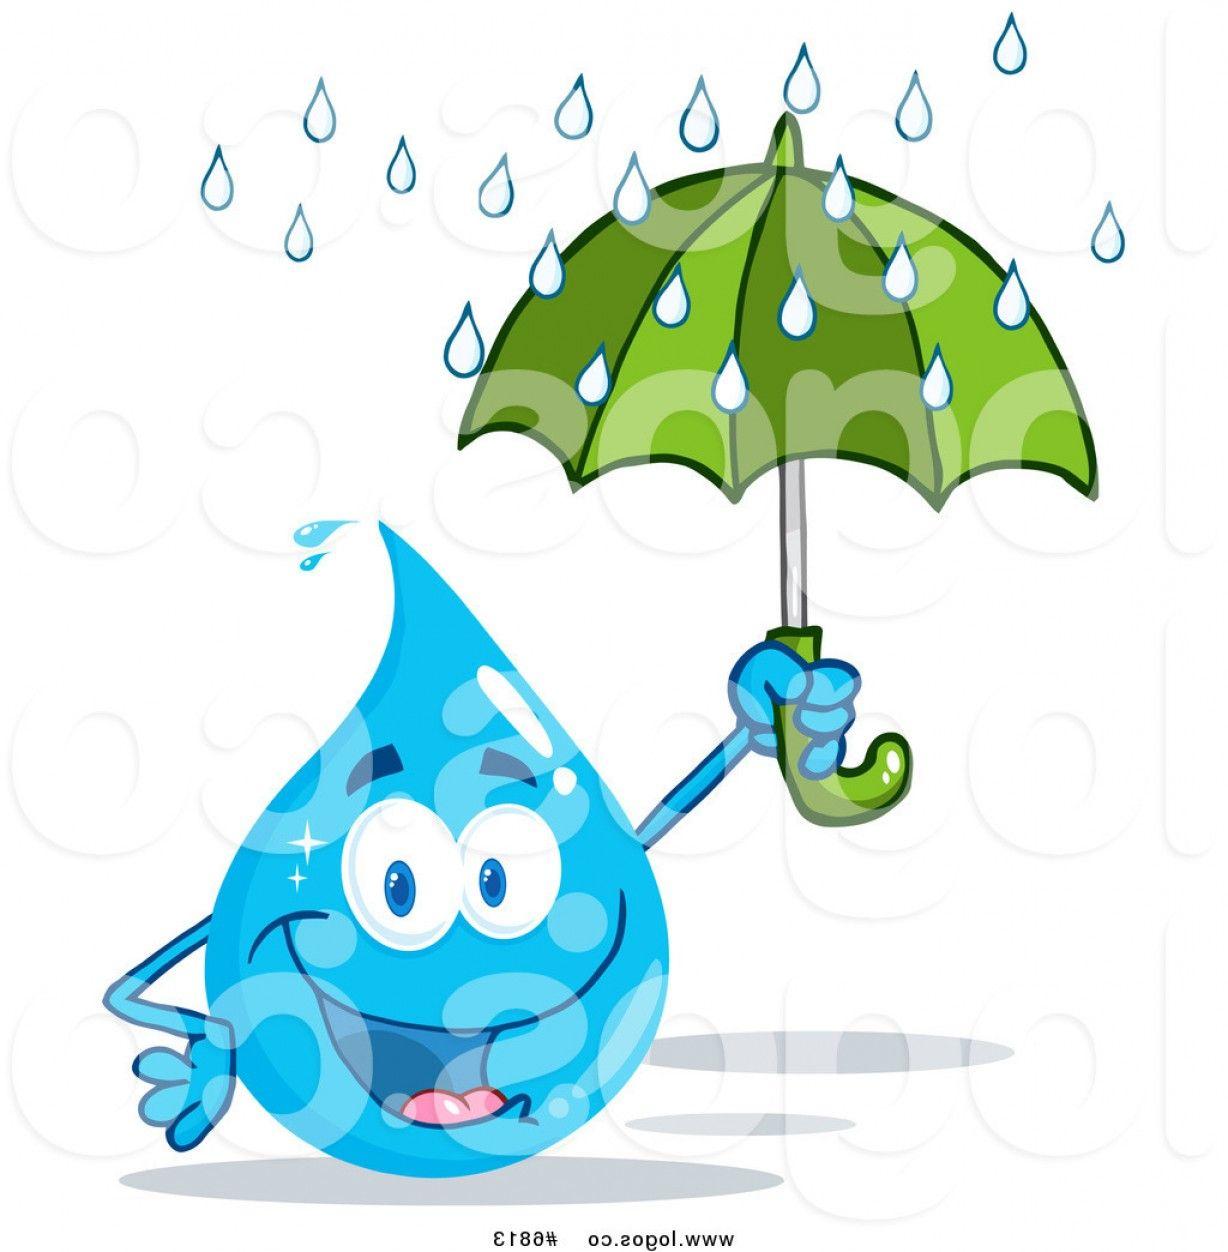 Umbrella Vector Logo - Royalty Free Clip Art Vector Logo Of A Water Drop Holding An ...